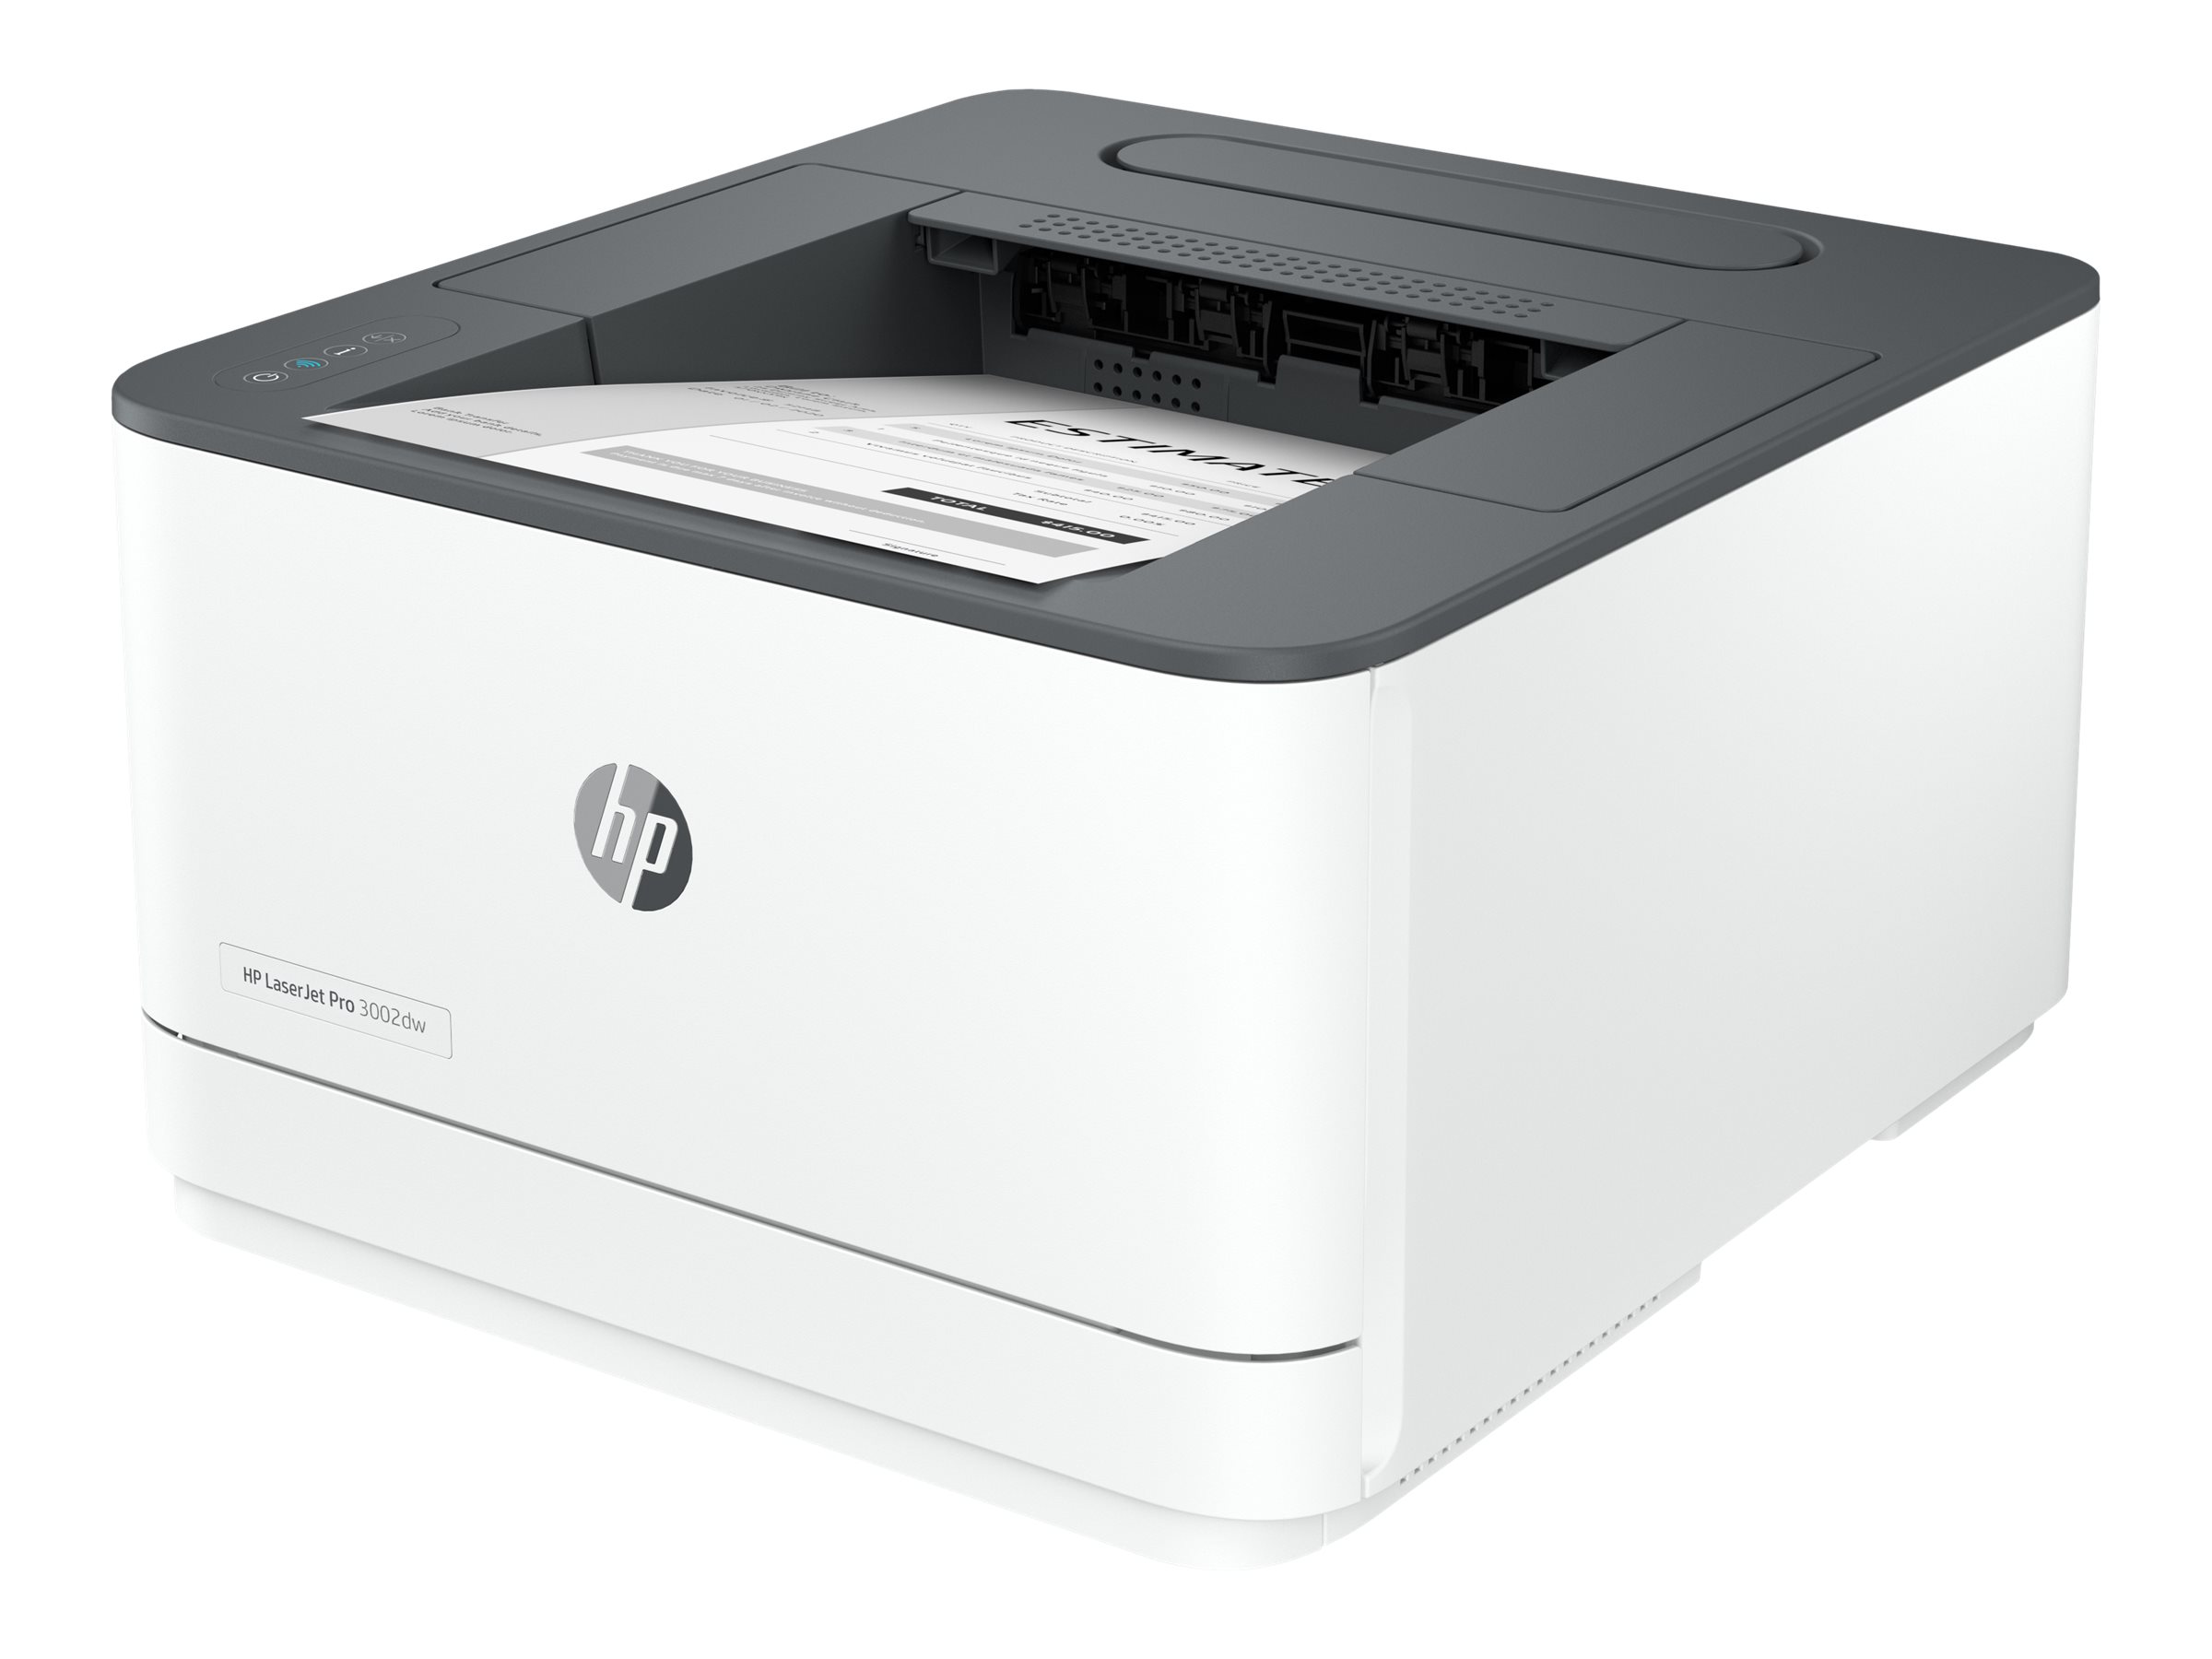 HP LaserJet Pro 3002dw Laserdrucker weiß